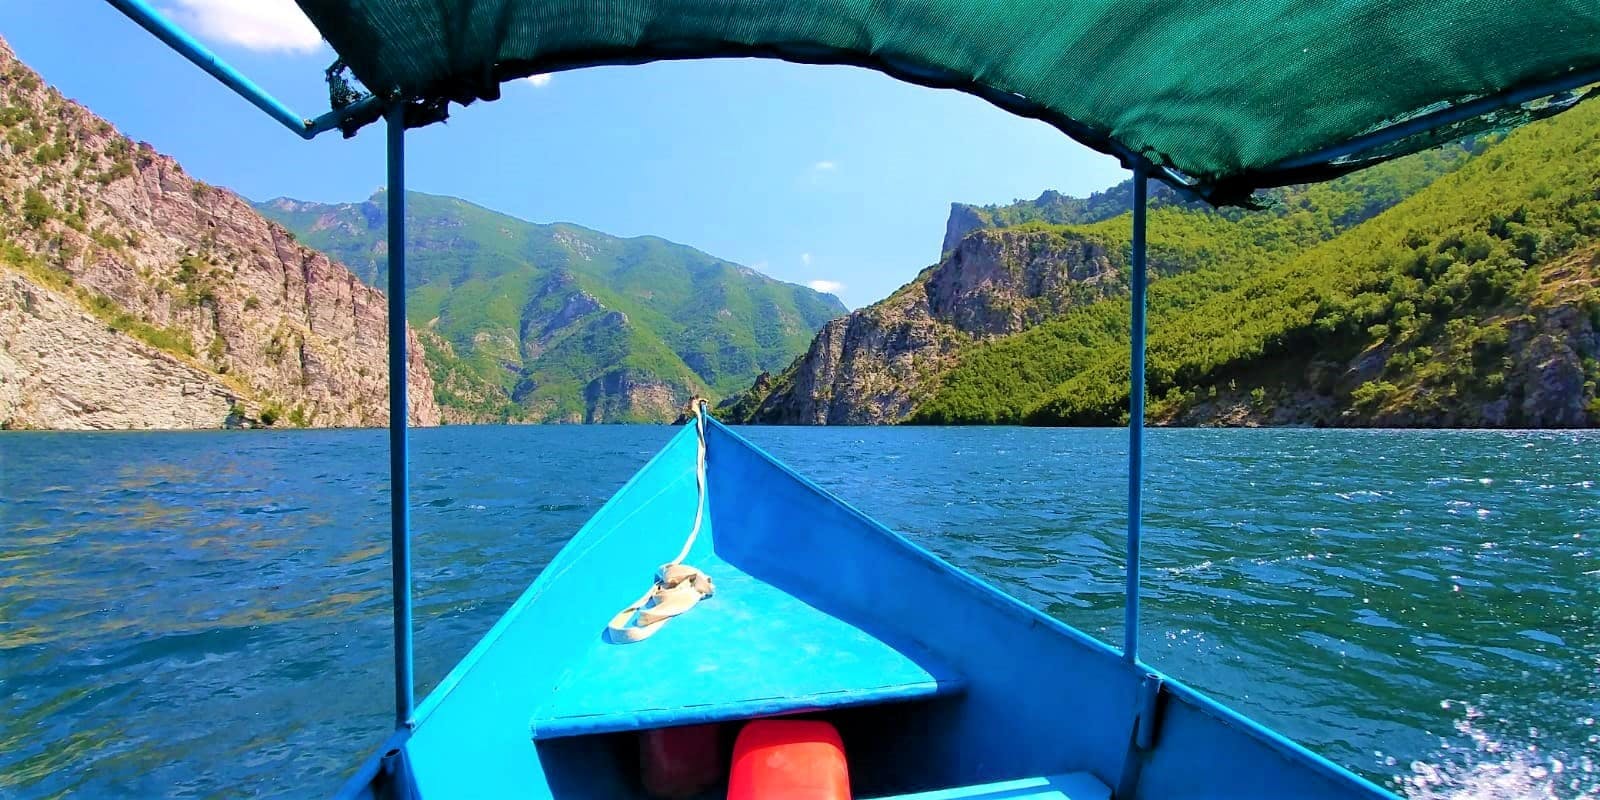 Lake Komani Tour and Boat Trip